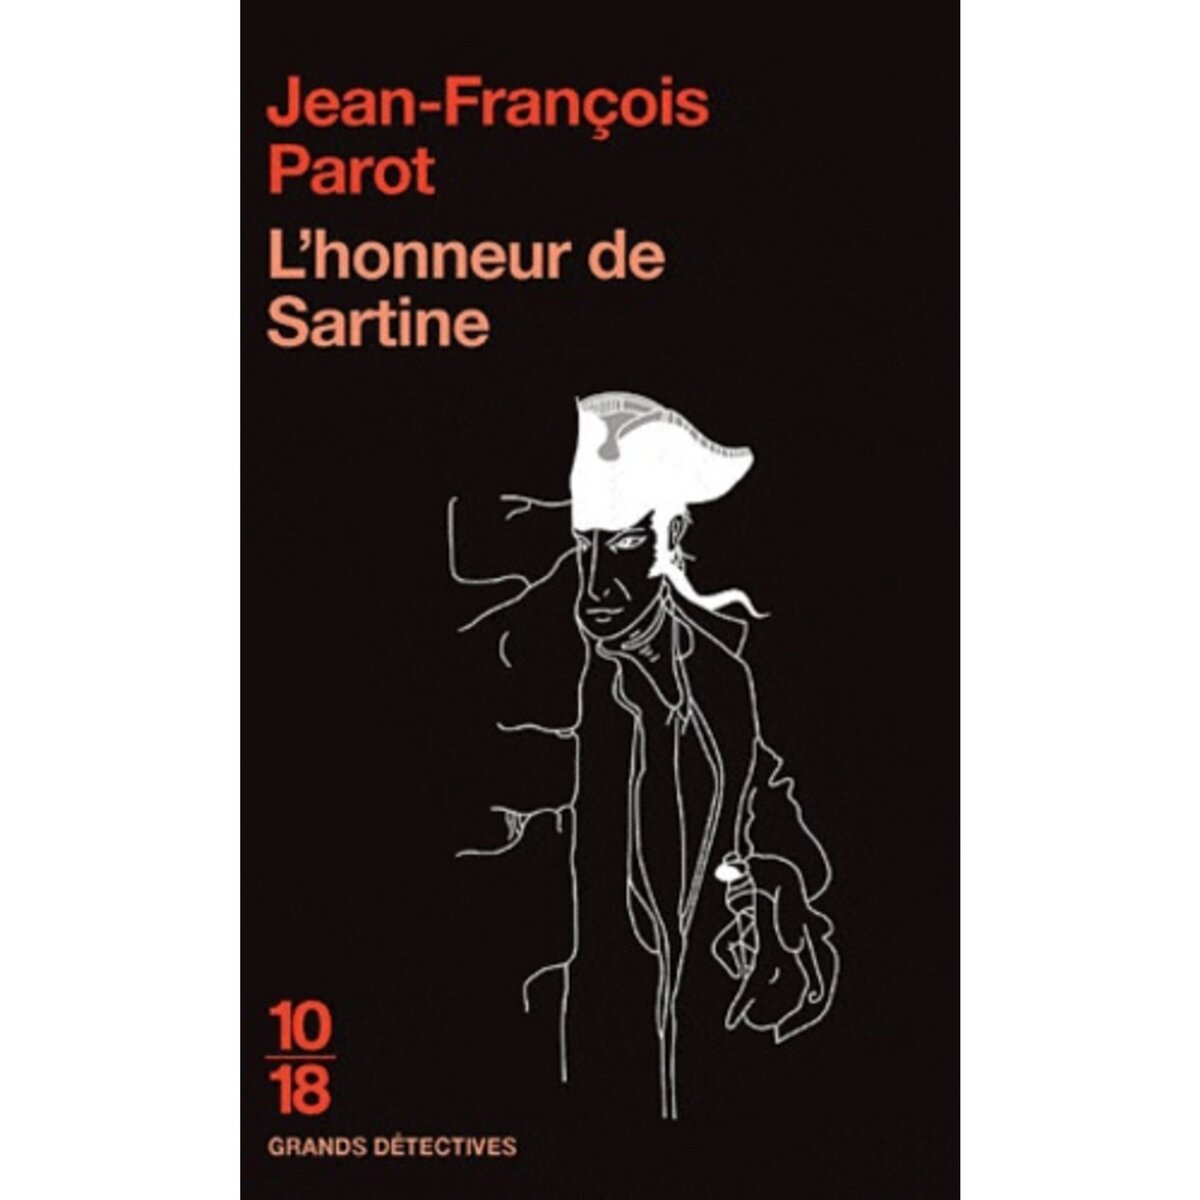  L'HONNEUR DE SARTINE, Parot Jean-François